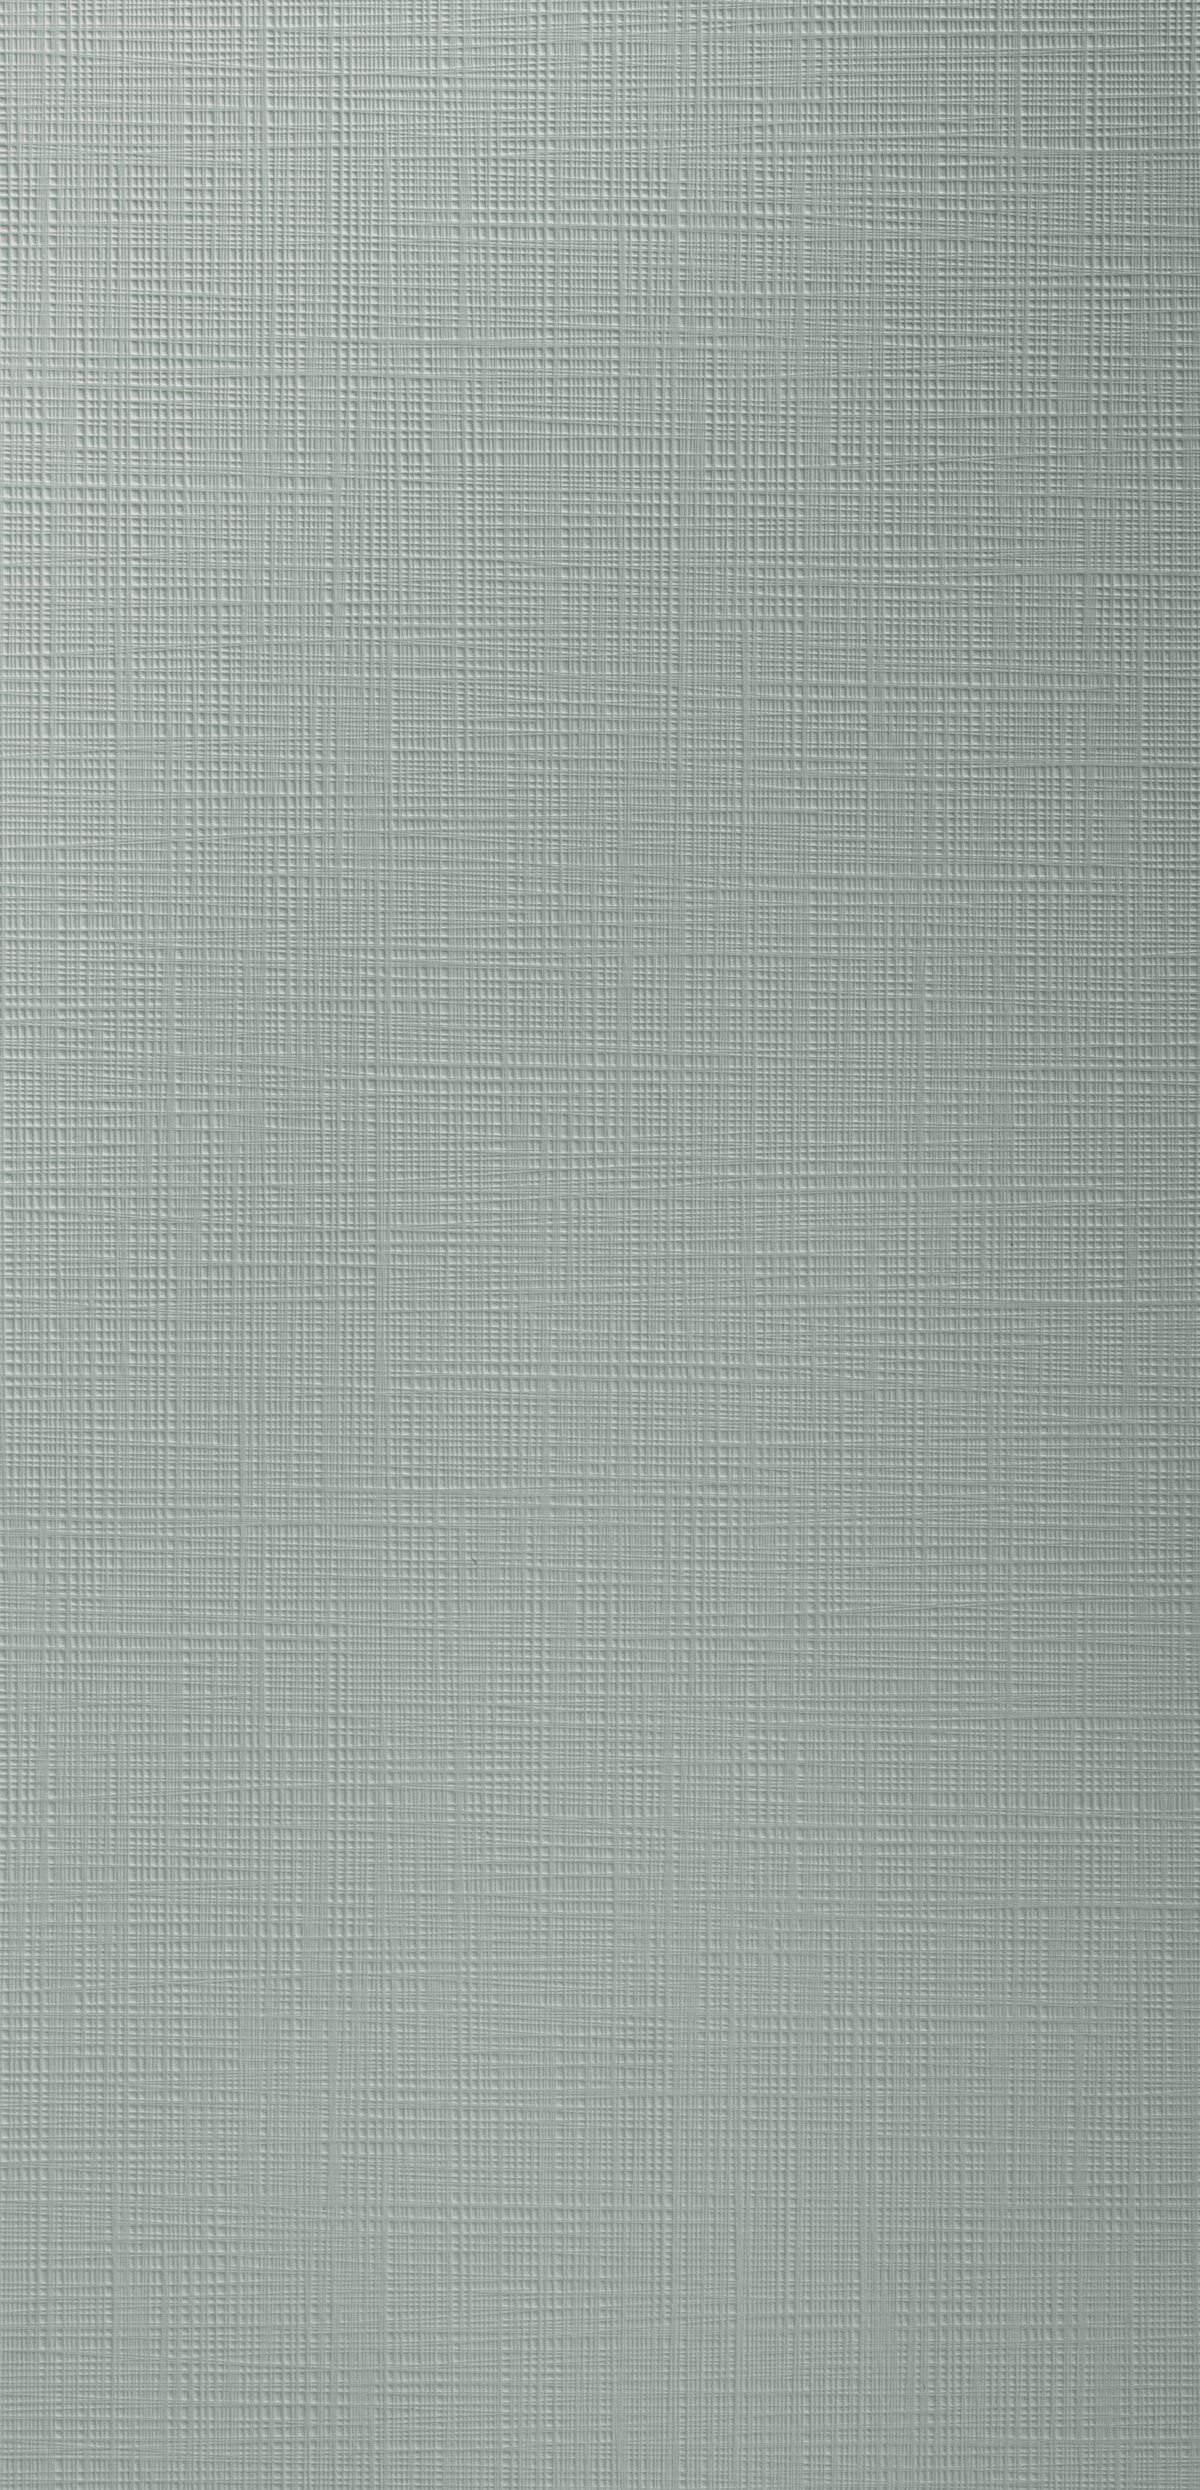 Fibra Vert de gris 019-panel